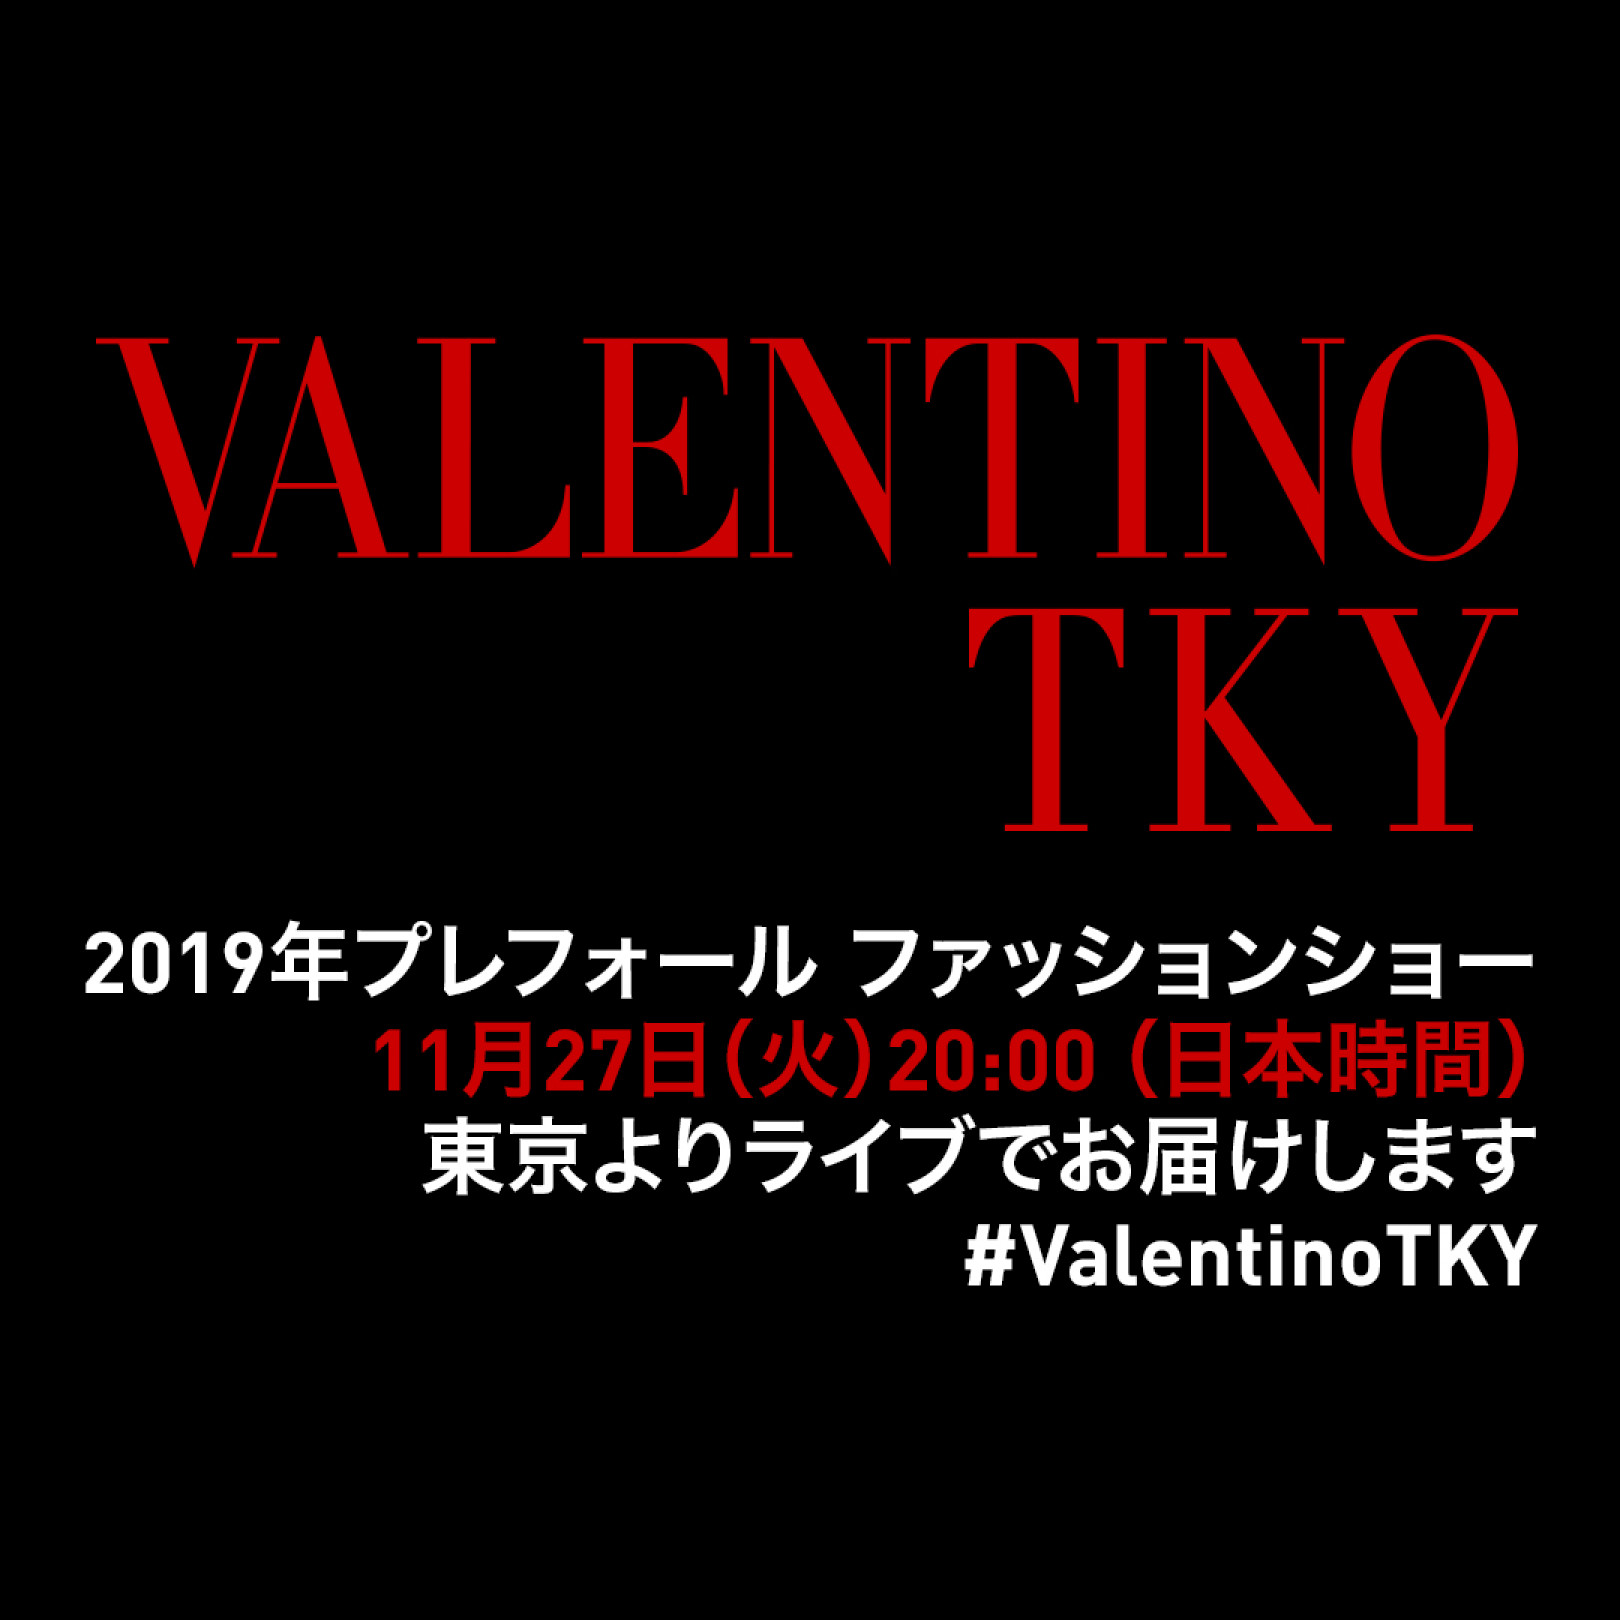 【生中継】ヴァレンティノが東京でショーを開催! 27日20時より